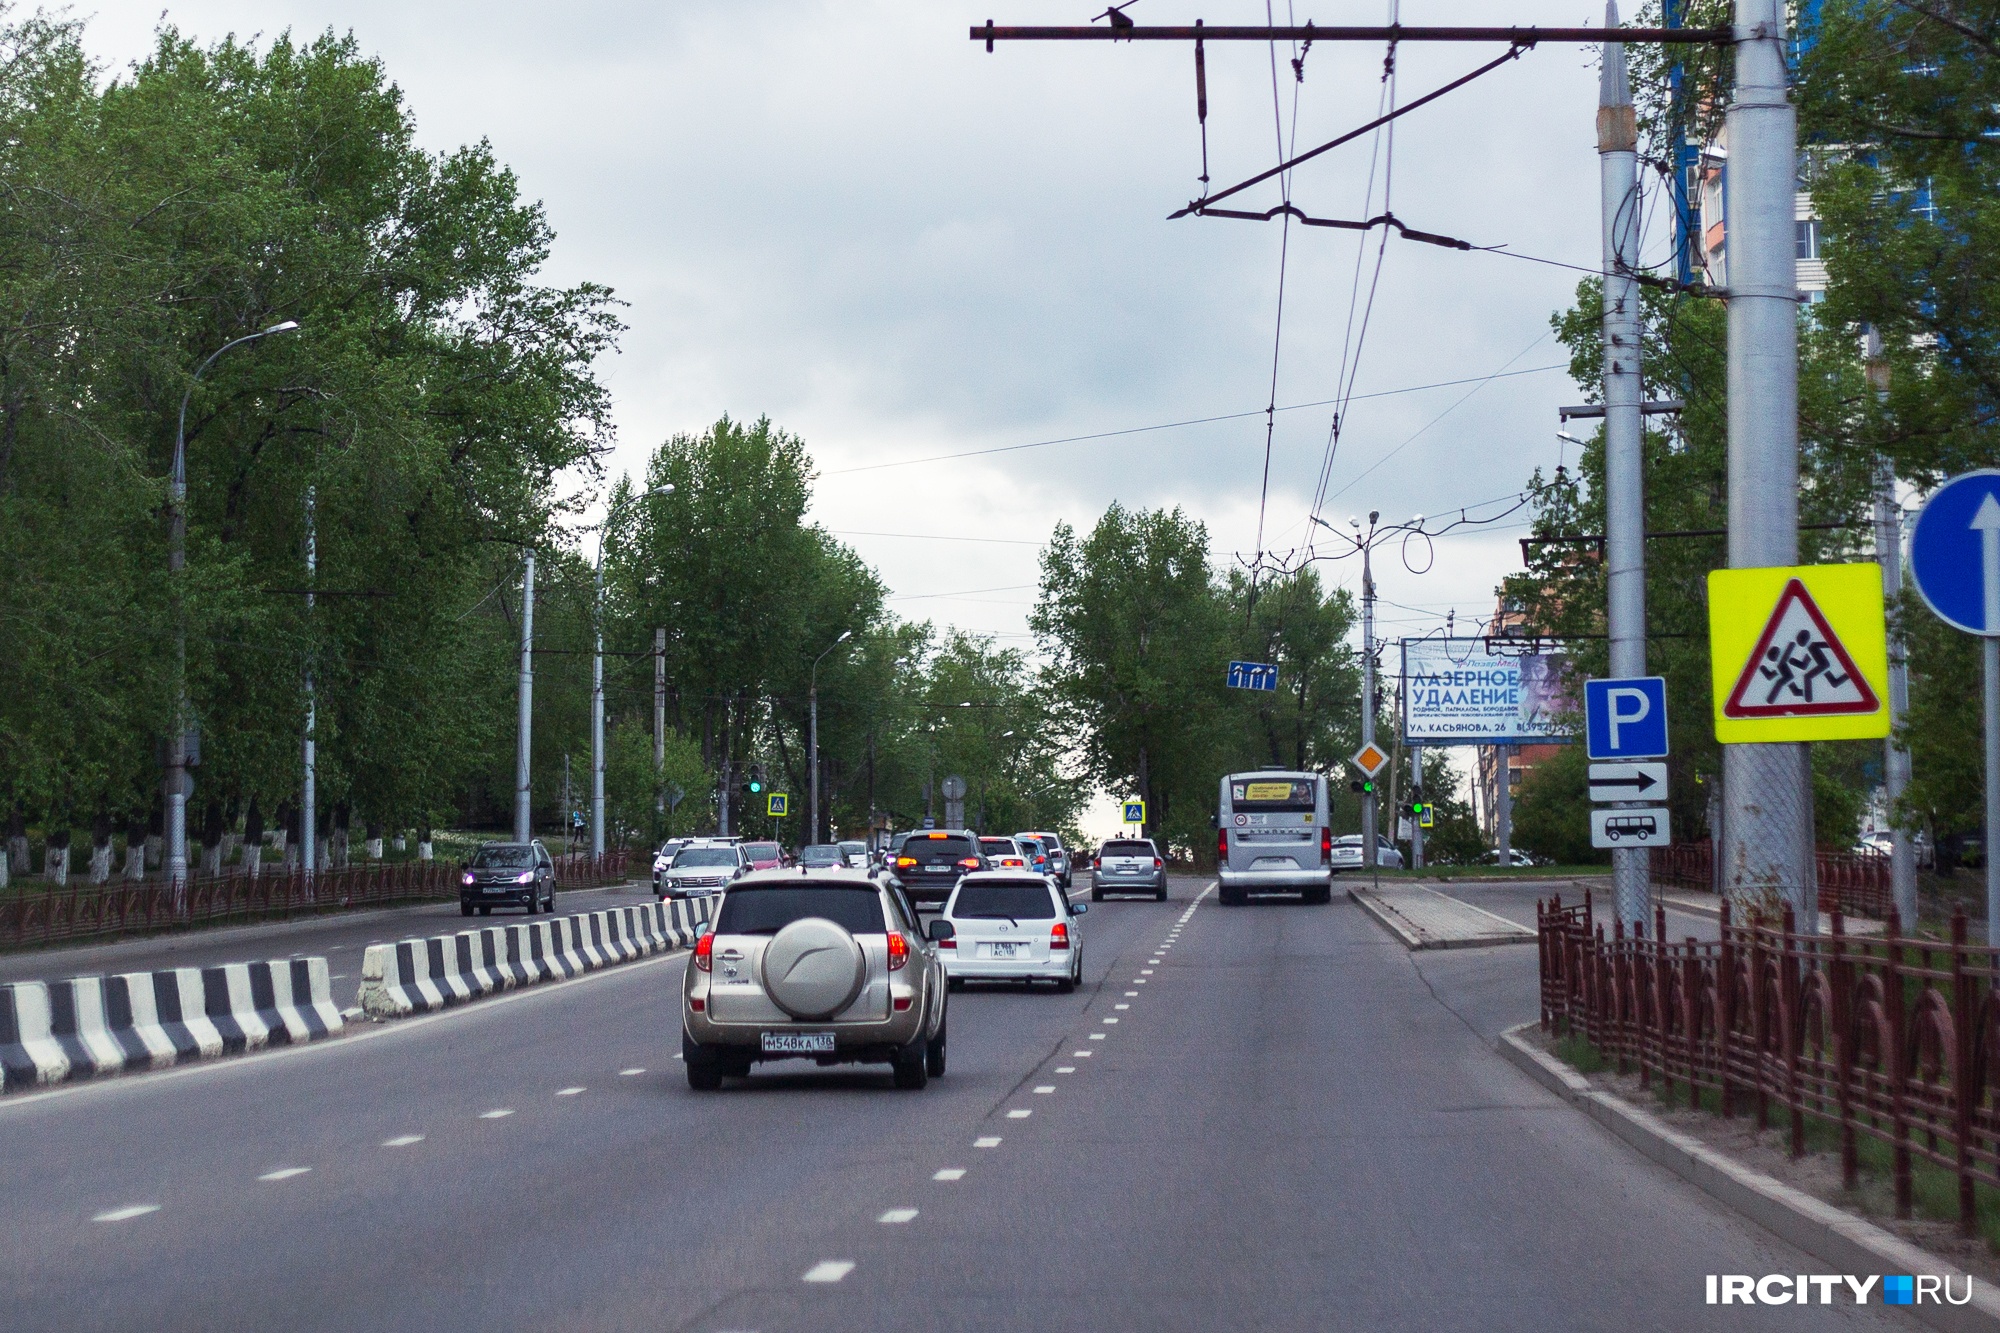 Иркутская область вошла в топ-20 регионов с высокой аварийностью на дорогах